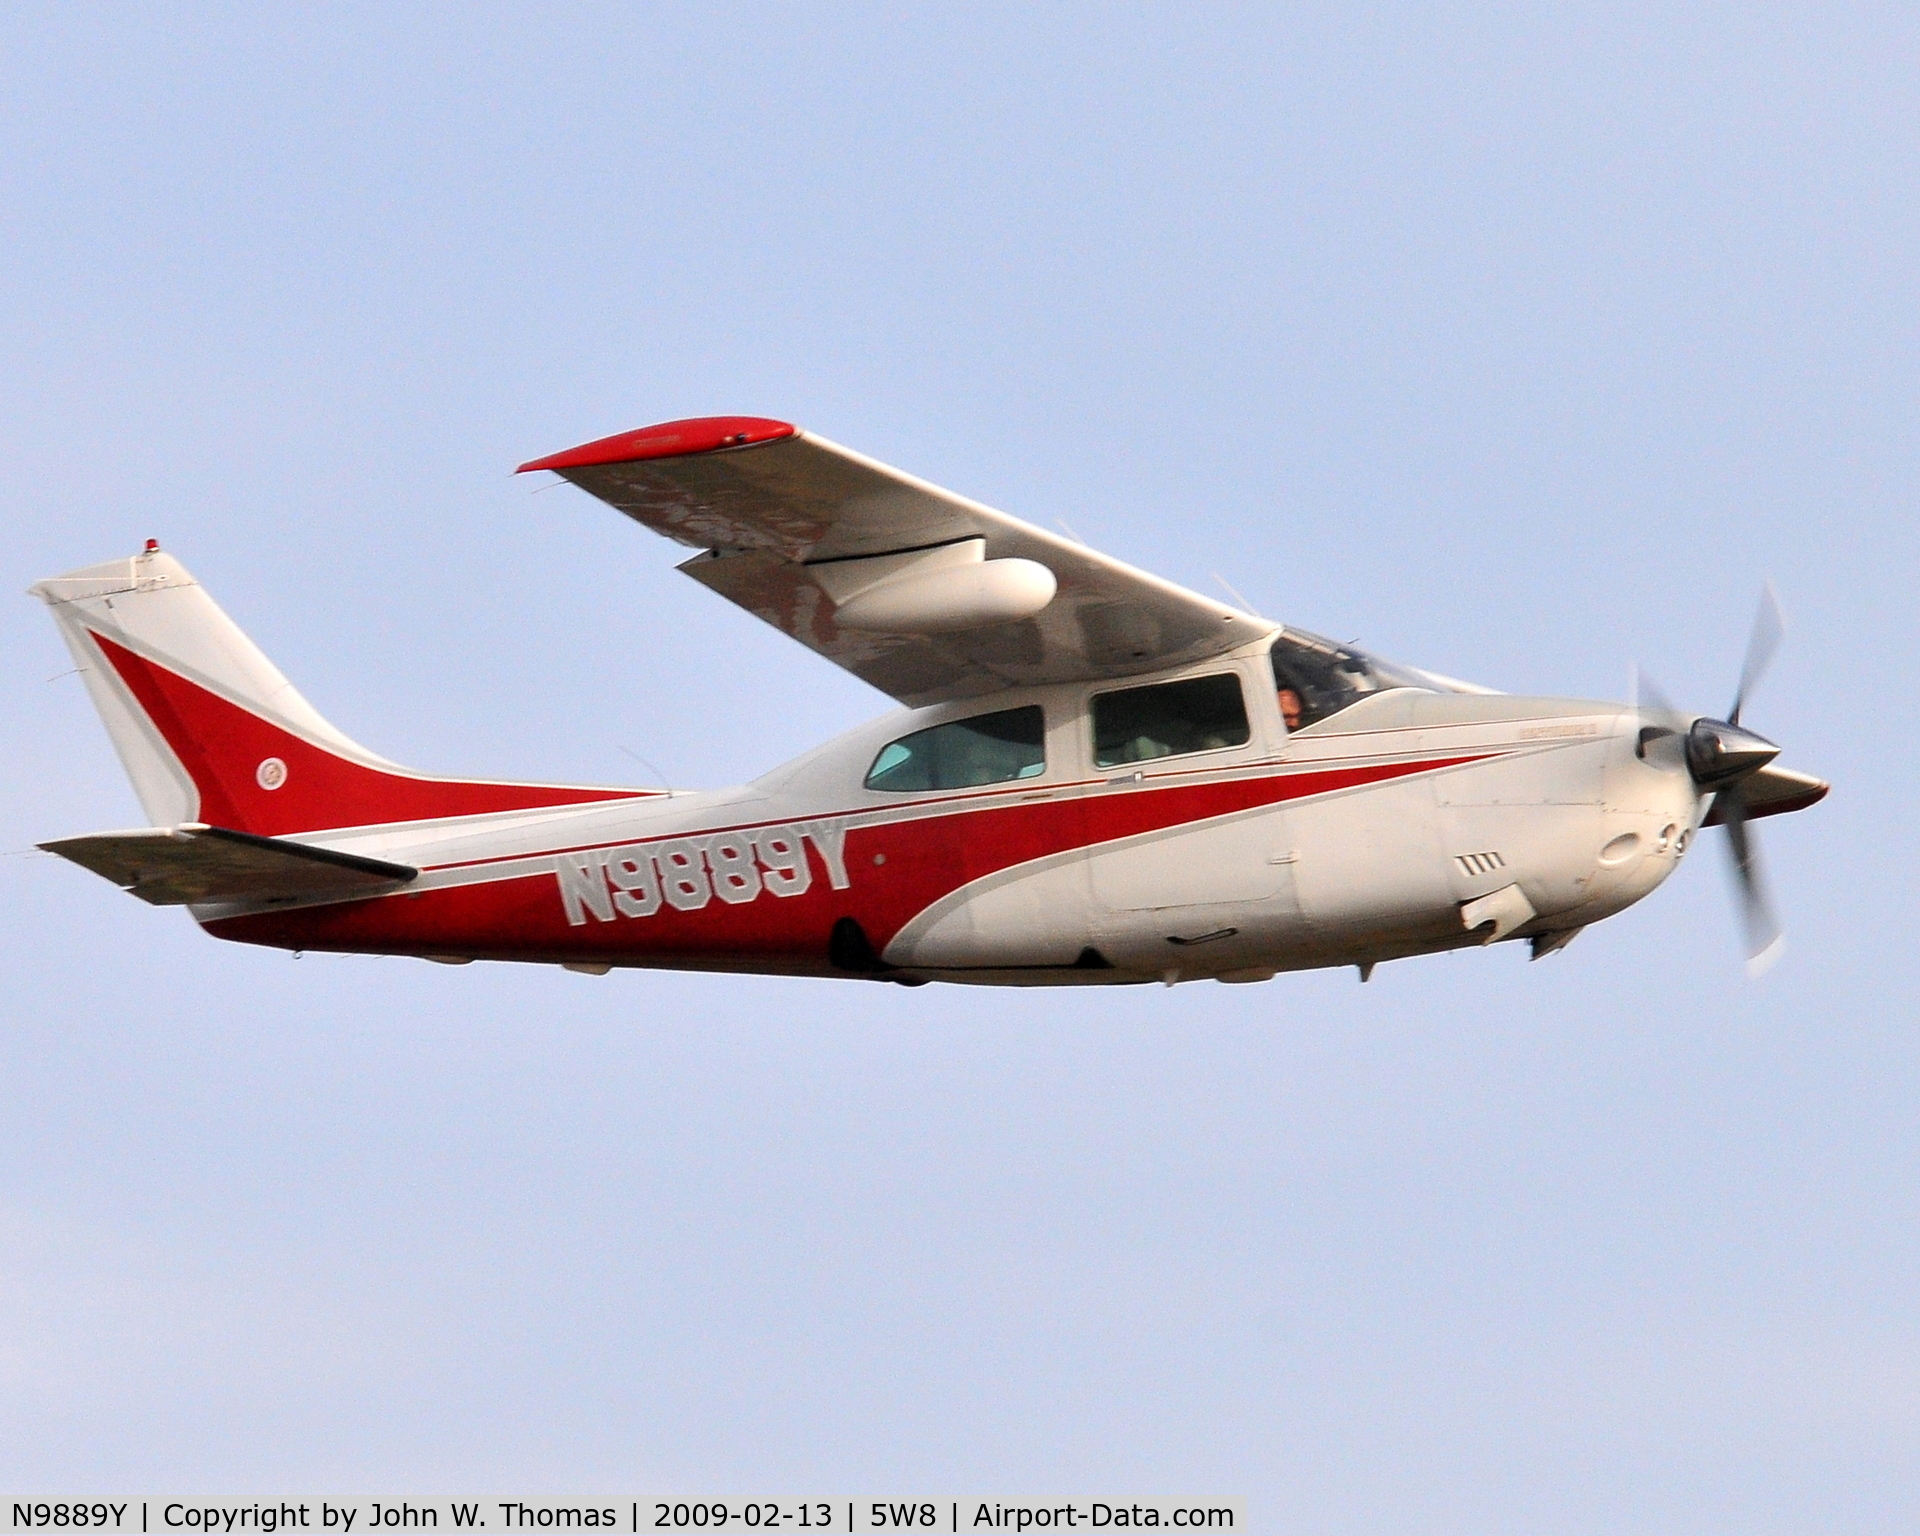 N9889Y, 1981 Cessna 210N Centurion C/N 21064629, Departing runway 22